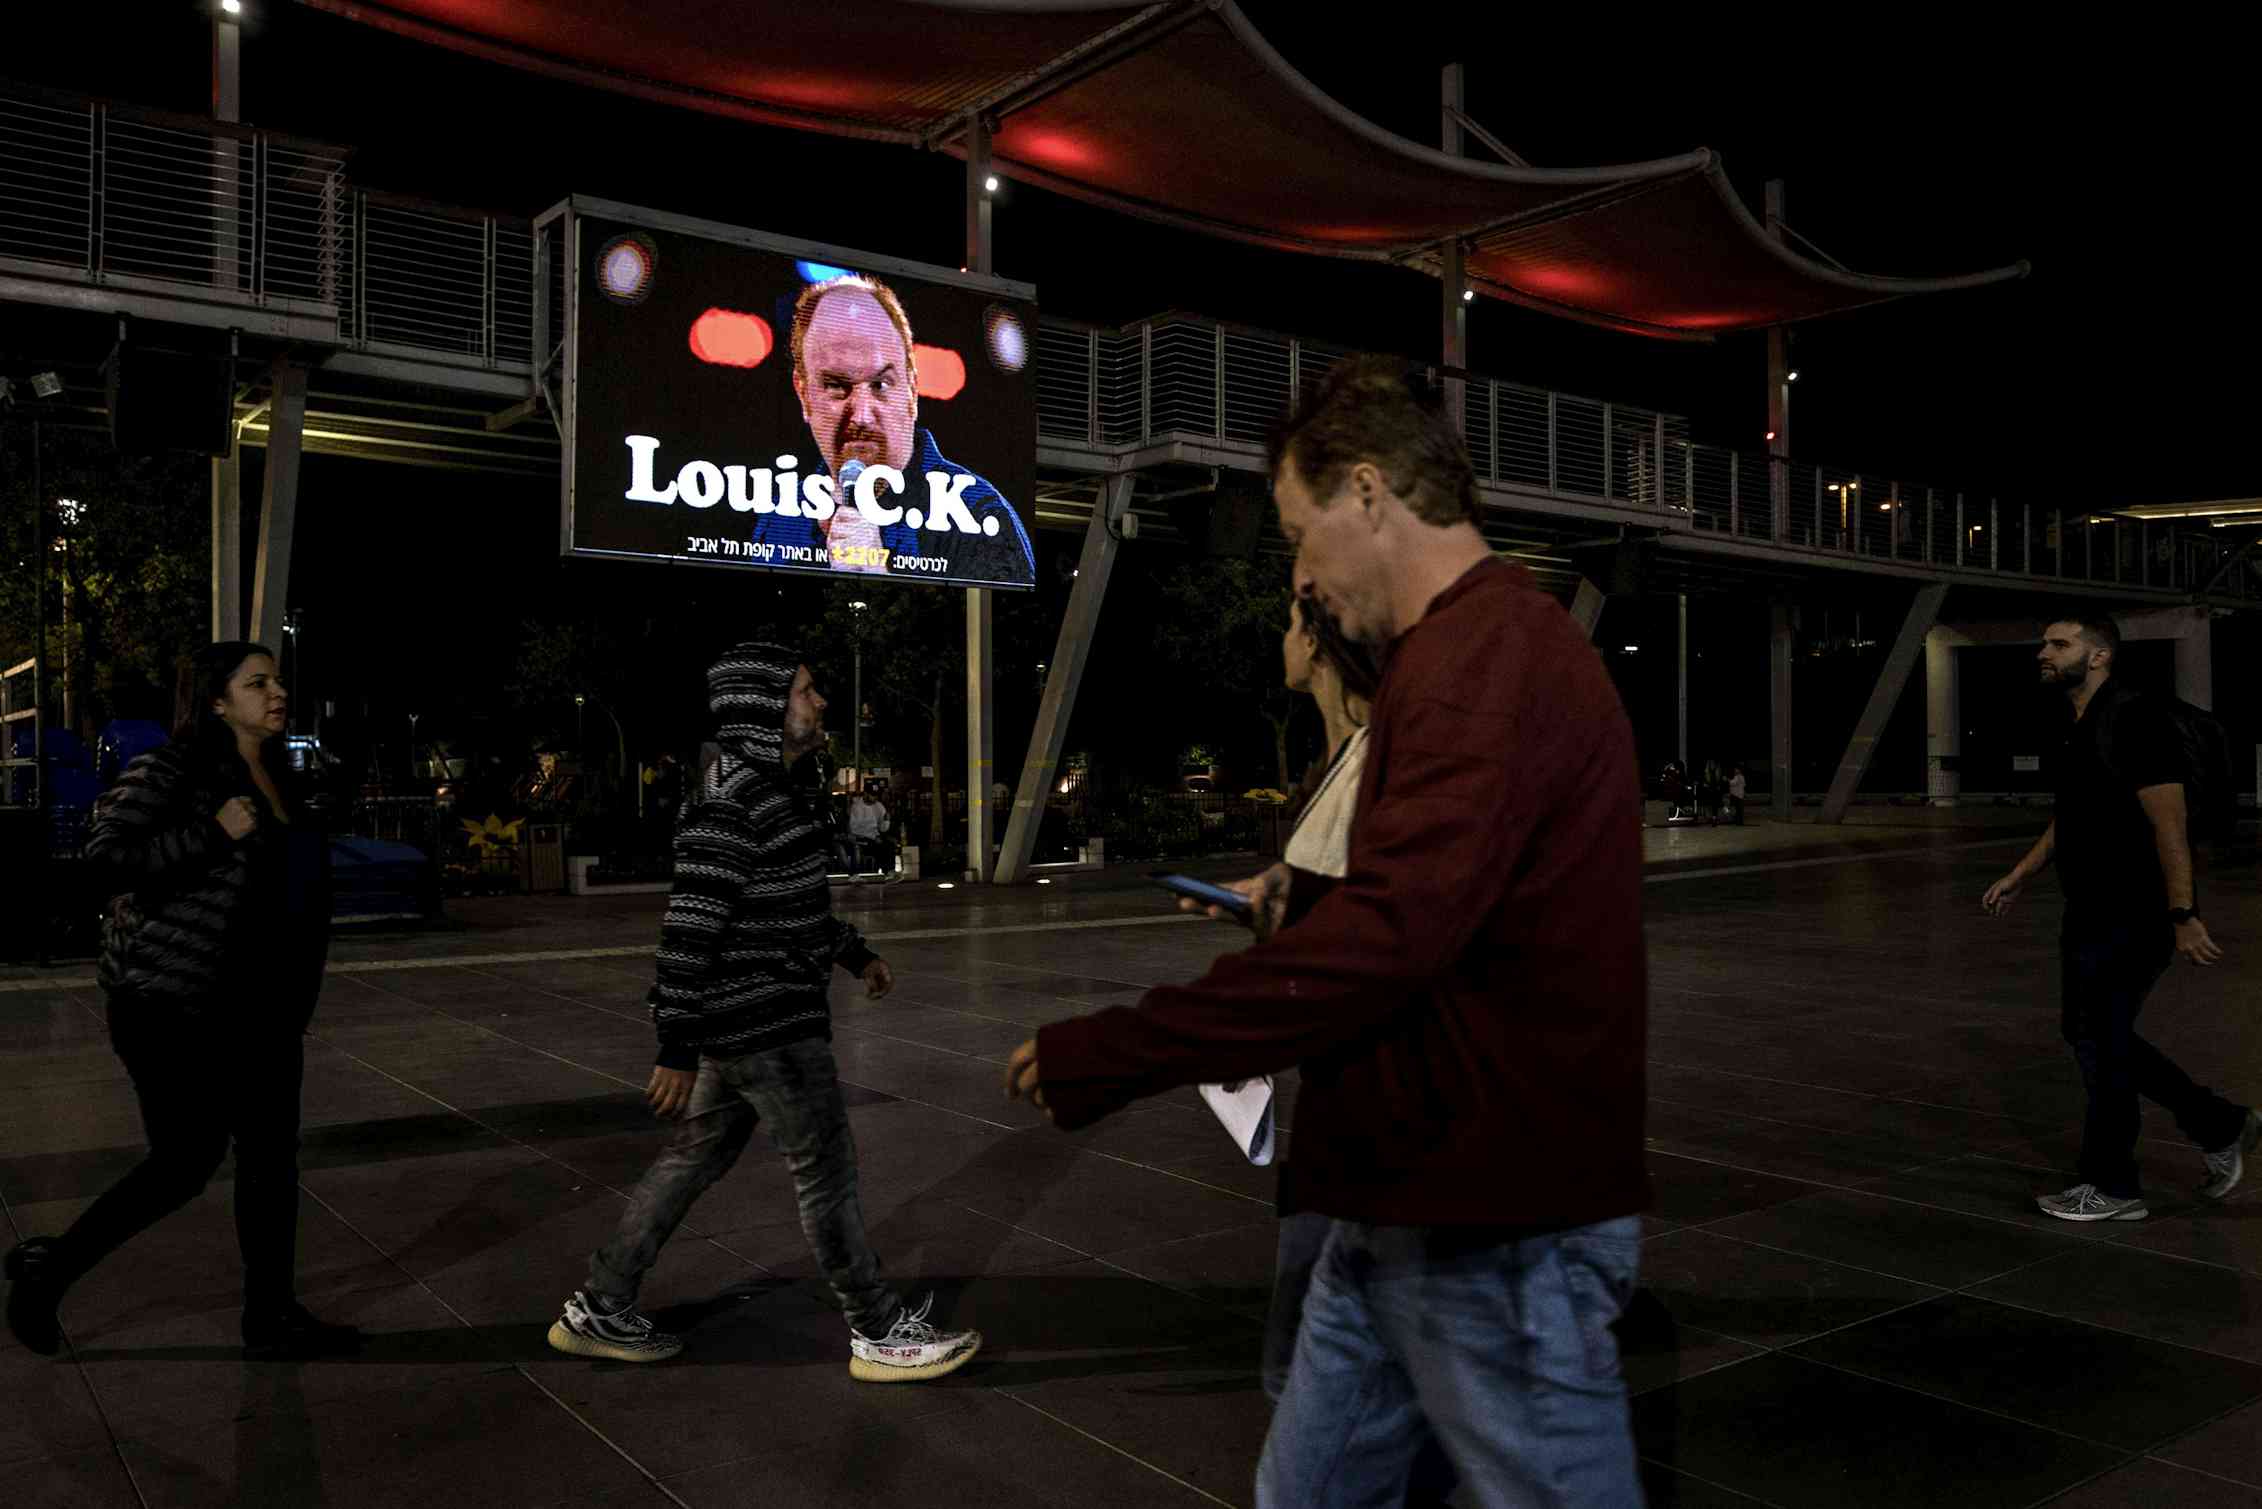 A billboard showing comedian Louis C.K.